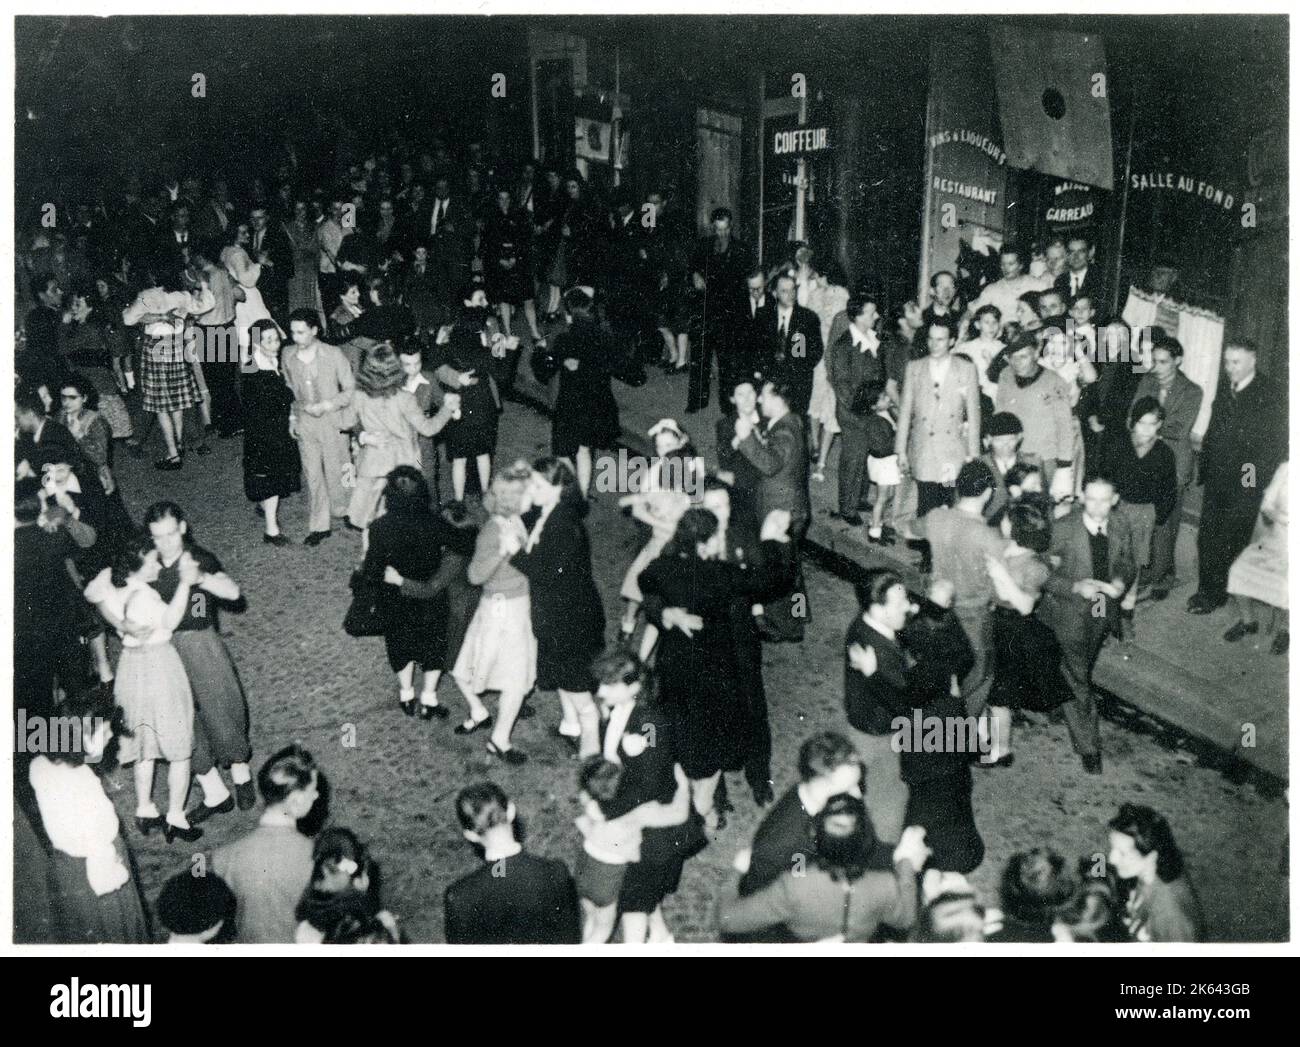 WW2 - Célébrations de la victoire à Paris, France - Parisiens dansant dans la rue, illuminés par la lumière de l'amultitude de feux d'artifice multicolores. Banque D'Images